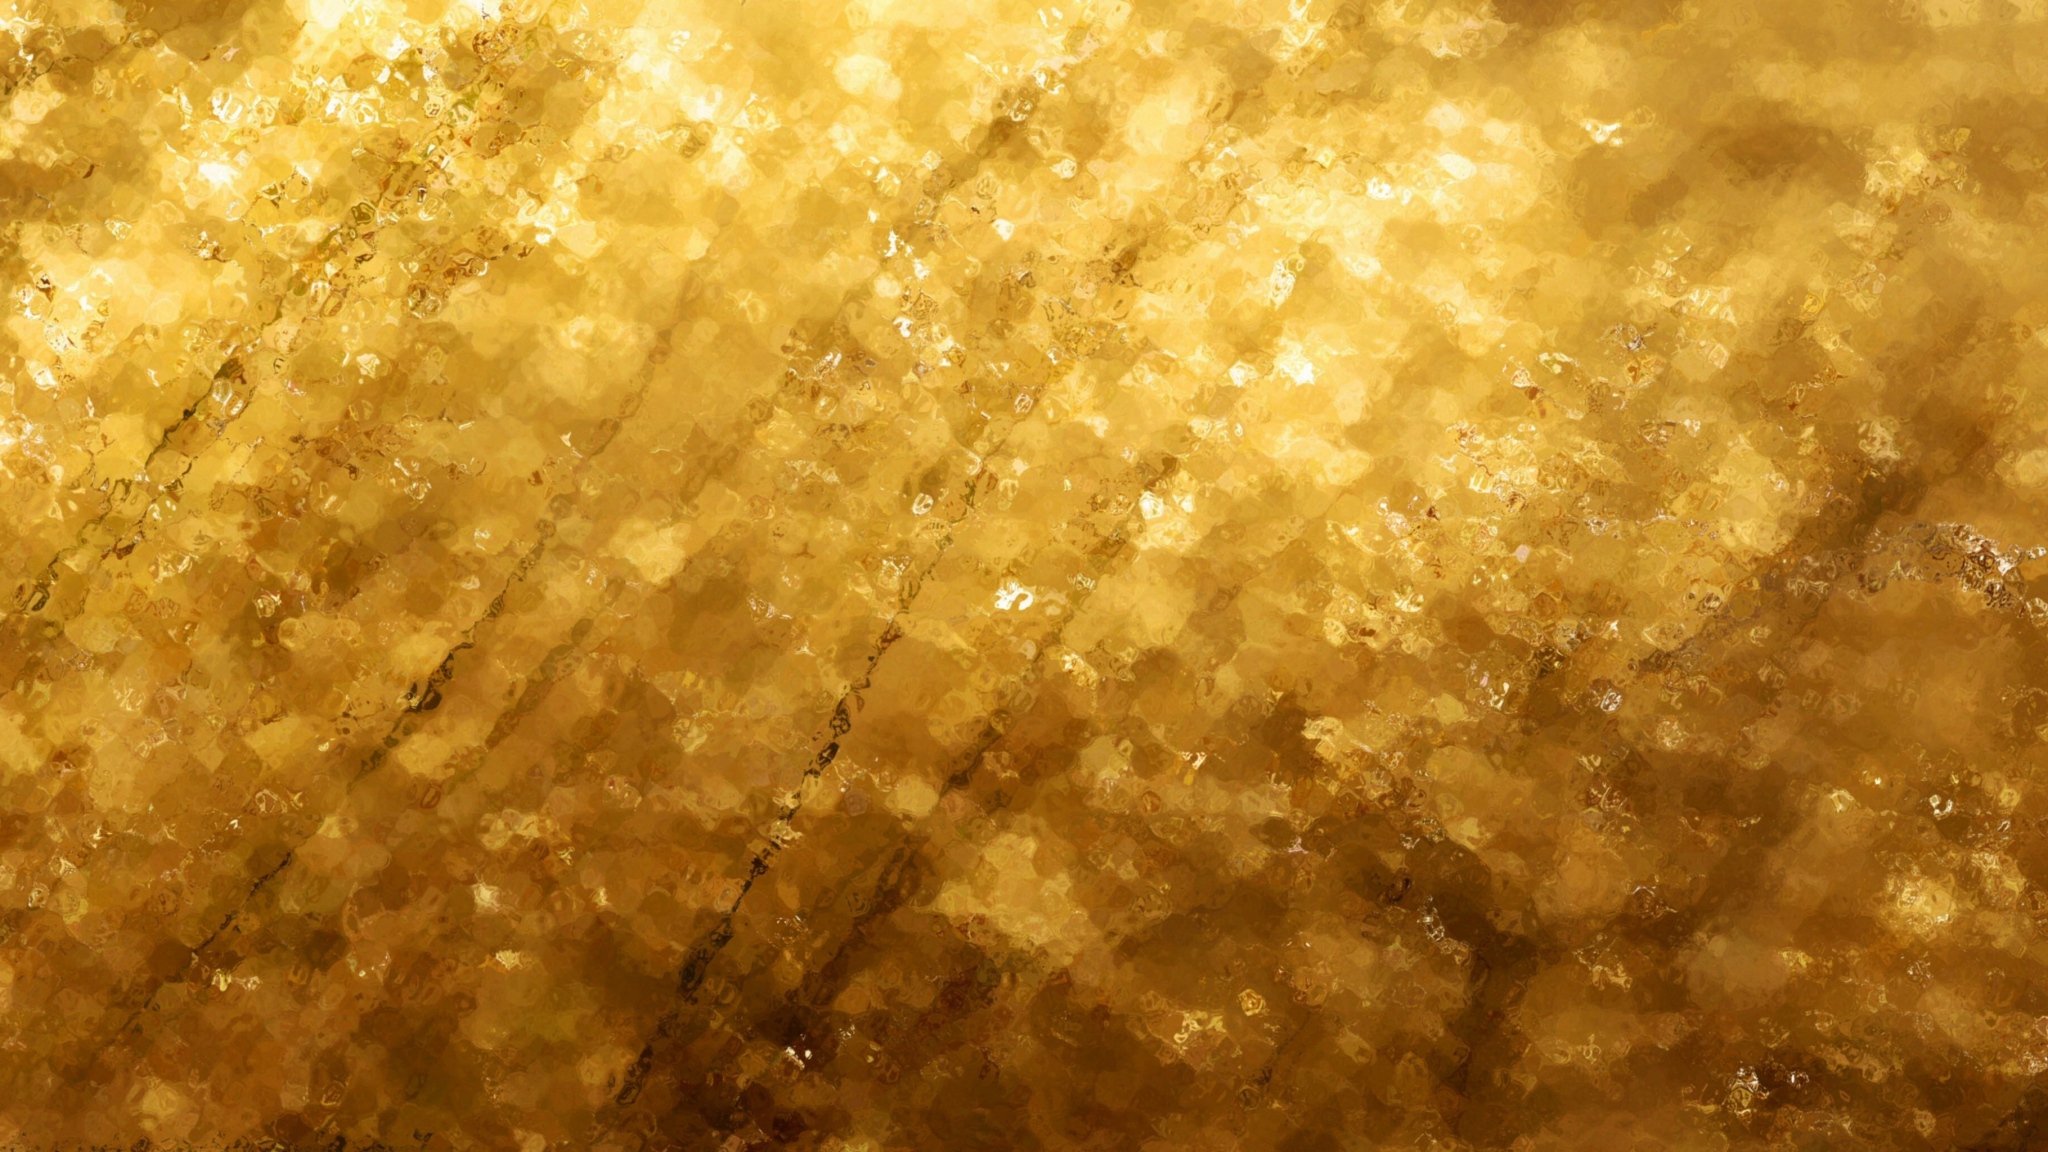 Dark Gold Background Hd - 2048x1152 Wallpaper 